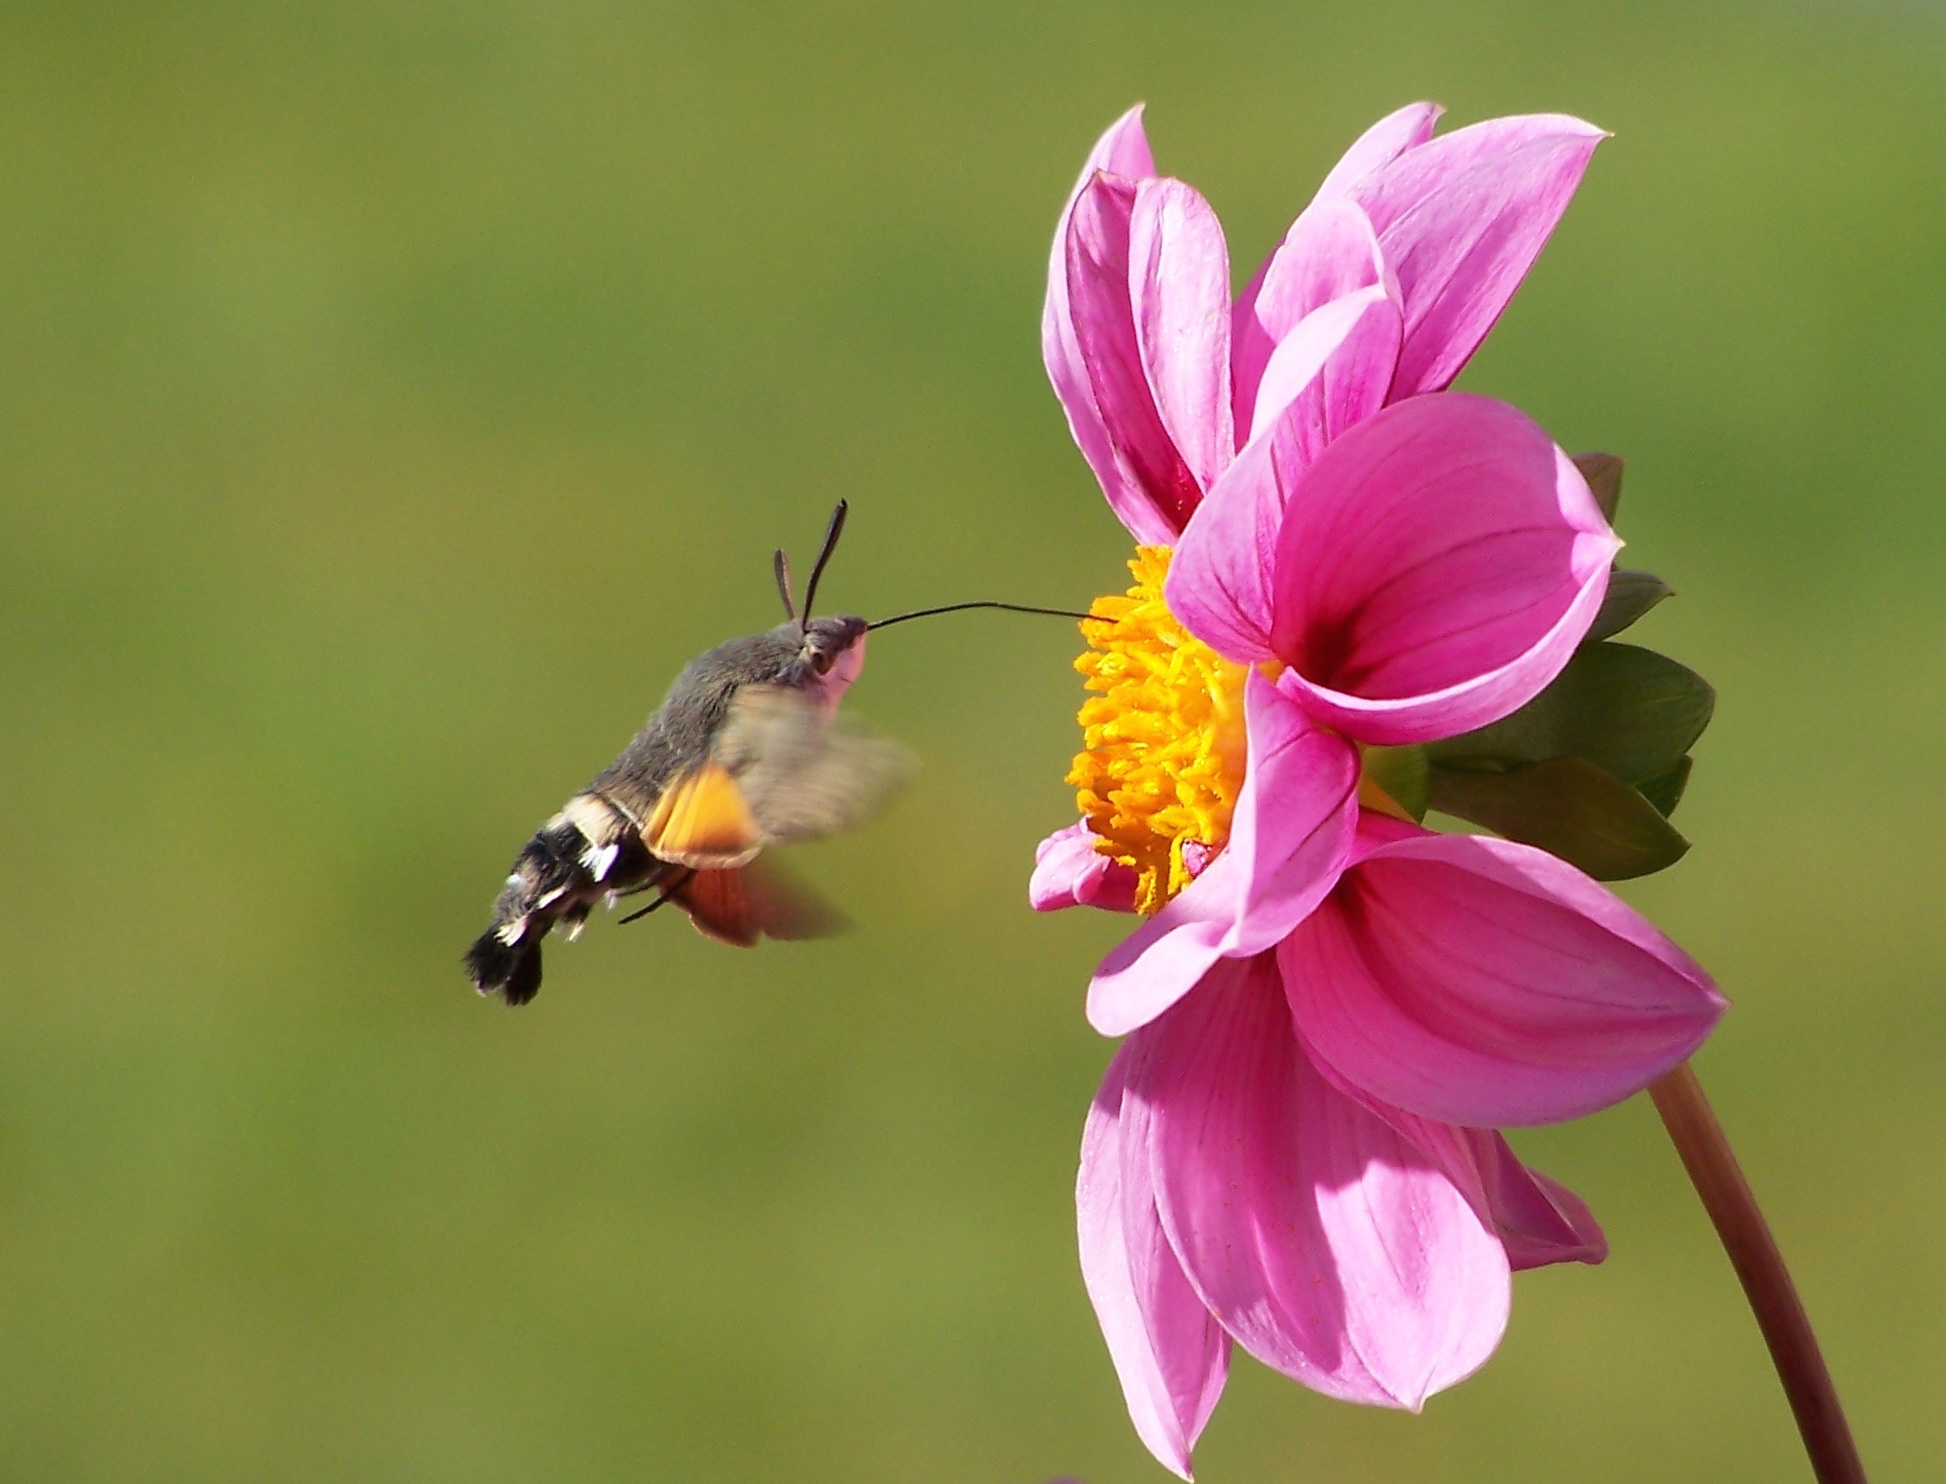 Polilla o mariposa nocturna alimentandose y polinizando una flor de dalia. 